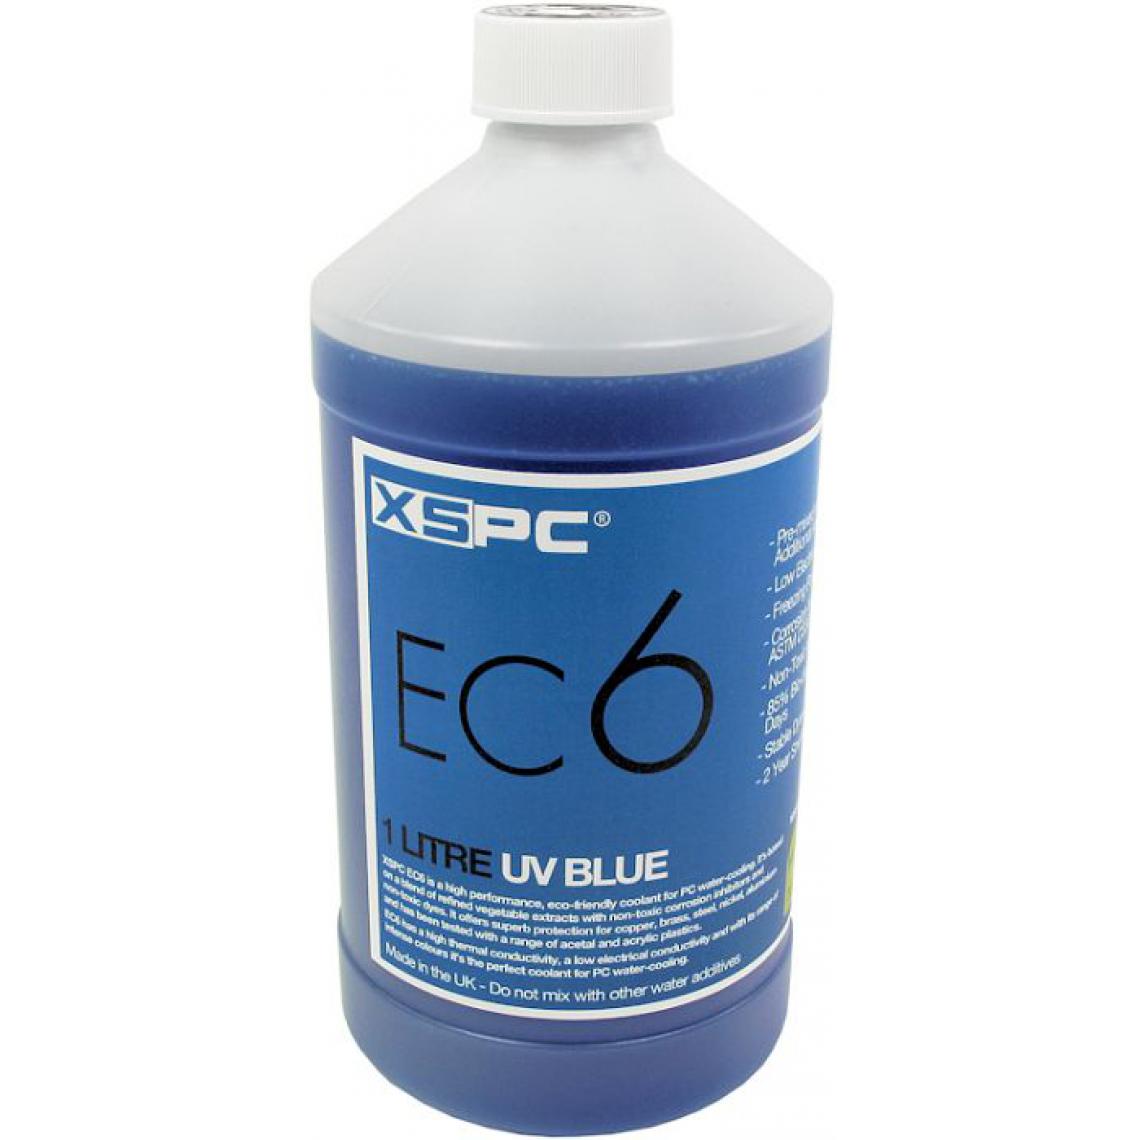 Xspc - EC6, 1 litre - bleu - Ventirad carte graphique